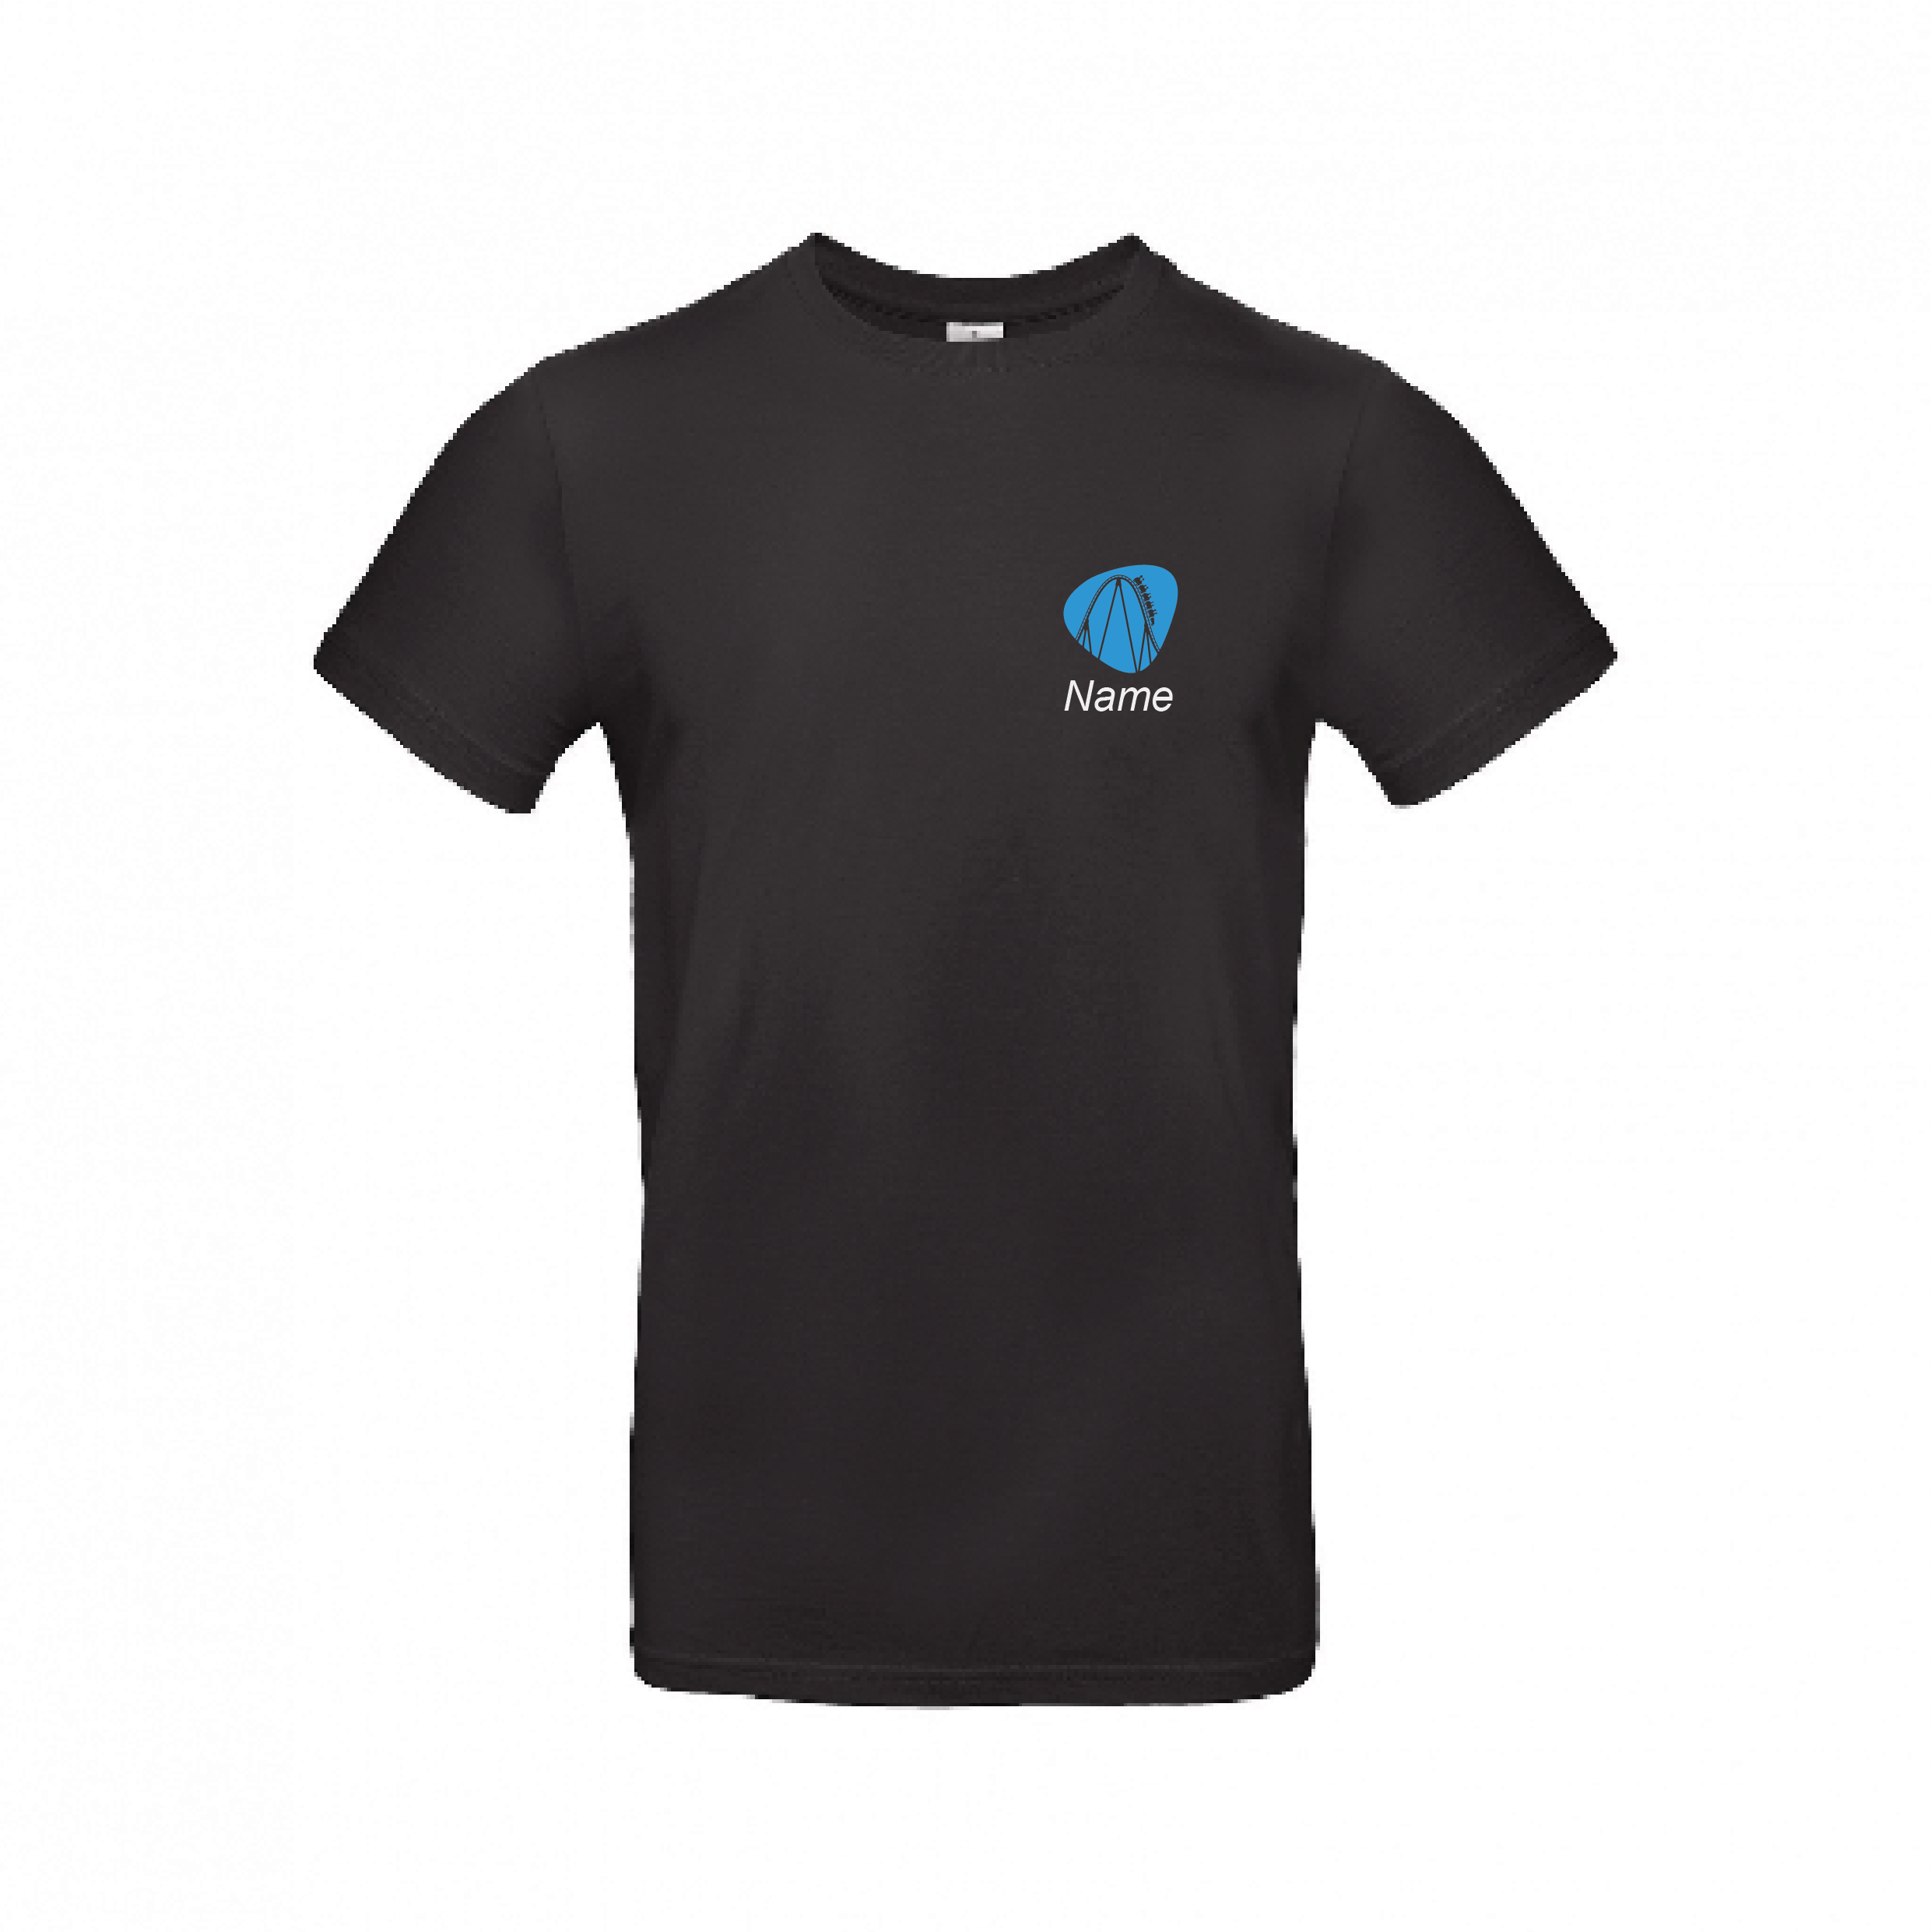 Unisex T-Shirt - Farbe schwarz mit blauer Schrift ohne App Werbung inkl. Name und Versand